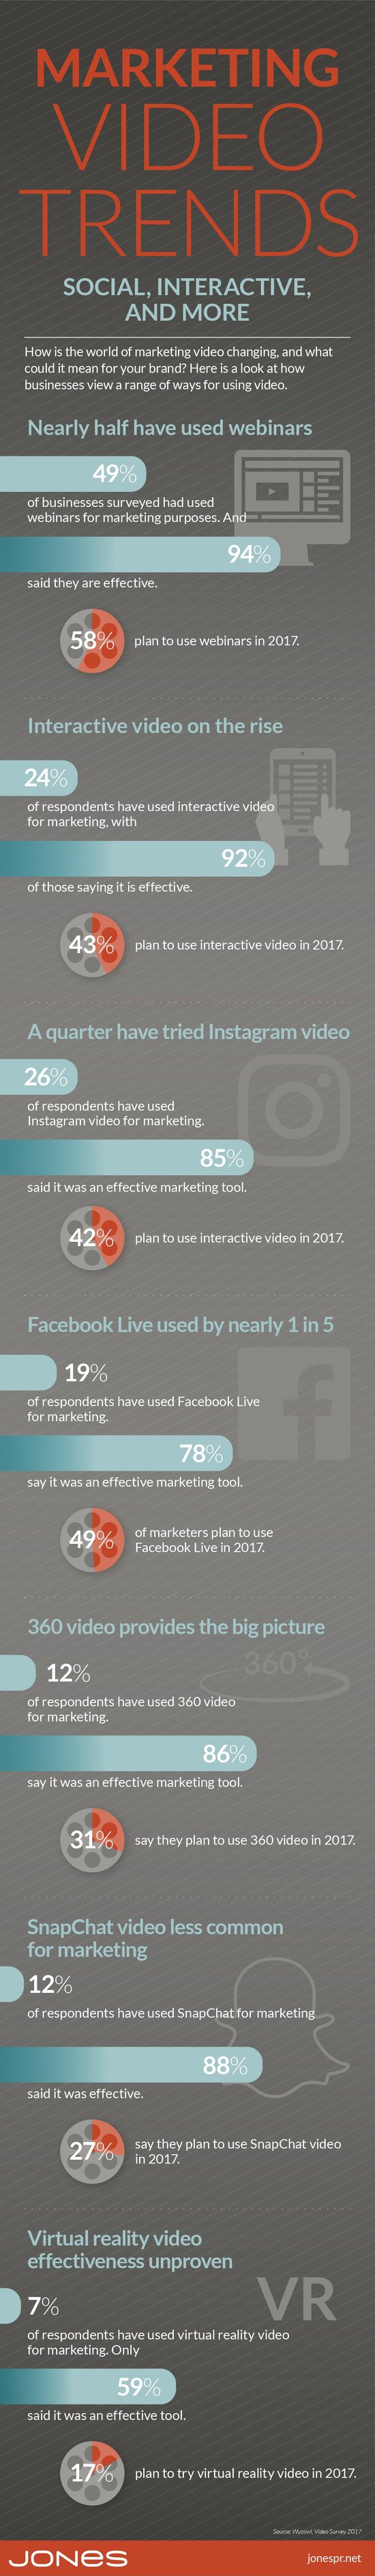 jones-infographic-marketing-video-trends.jpg